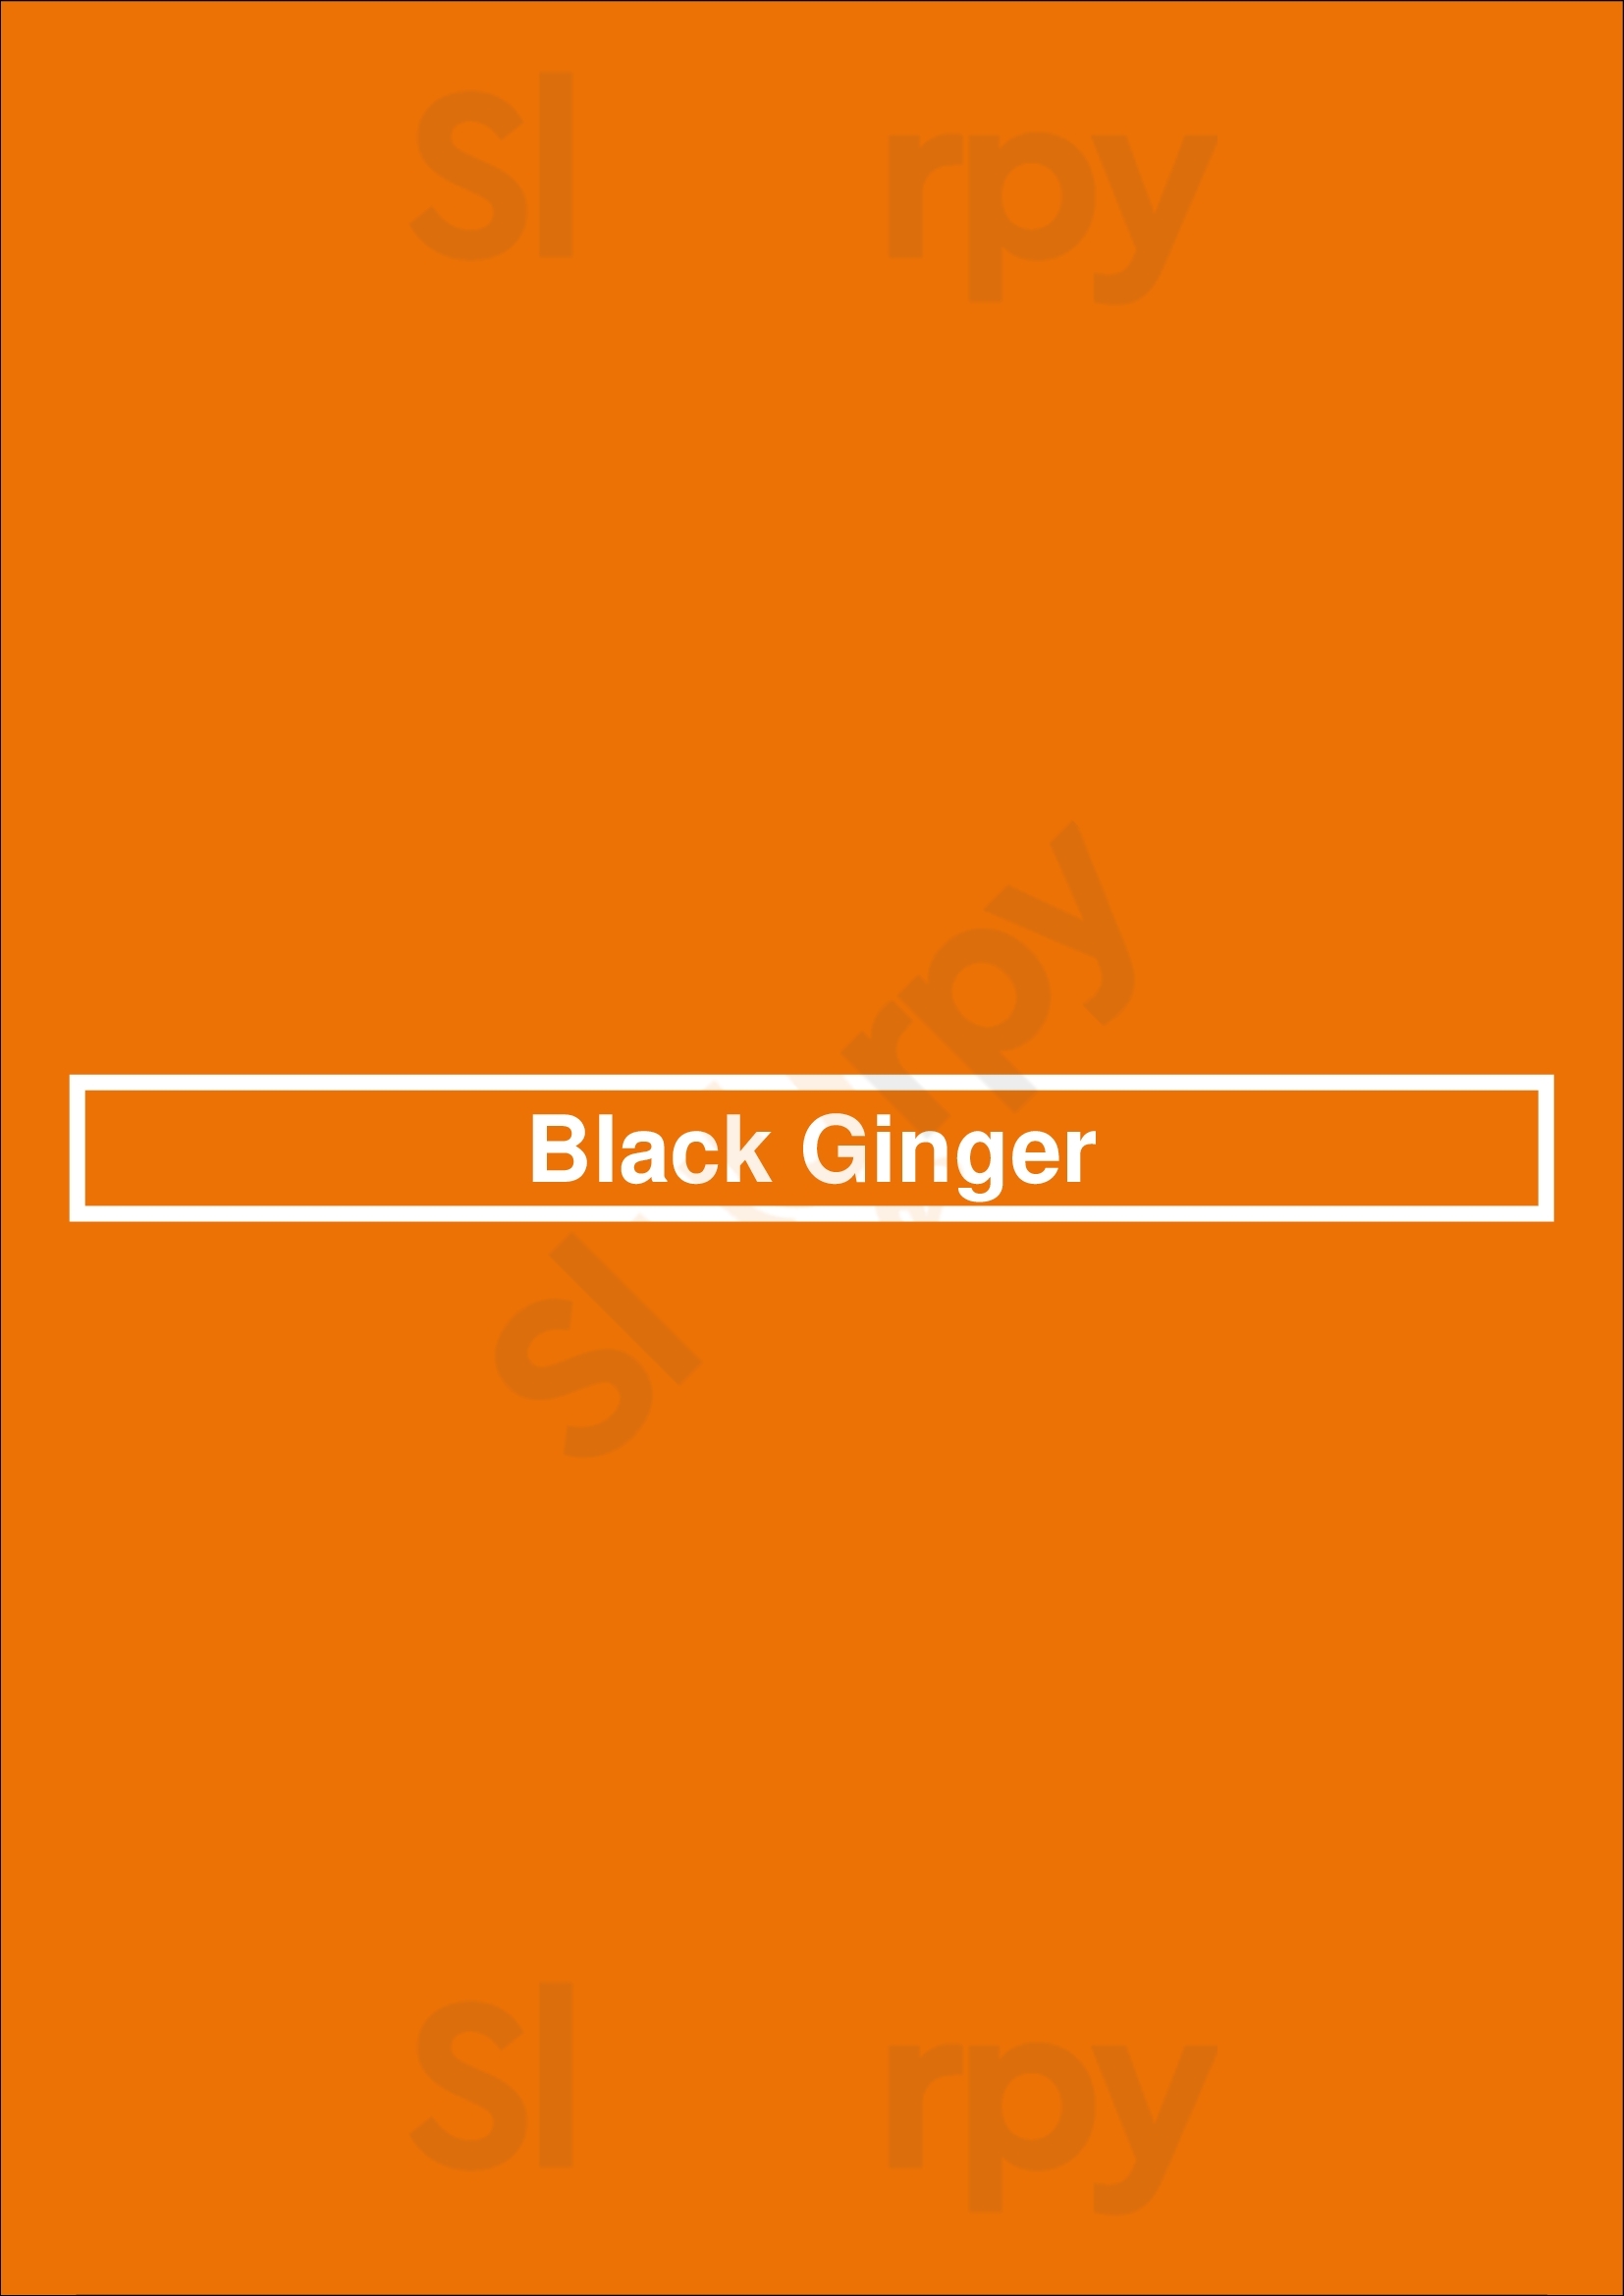 Black Ginger Greensboro Menu - 1